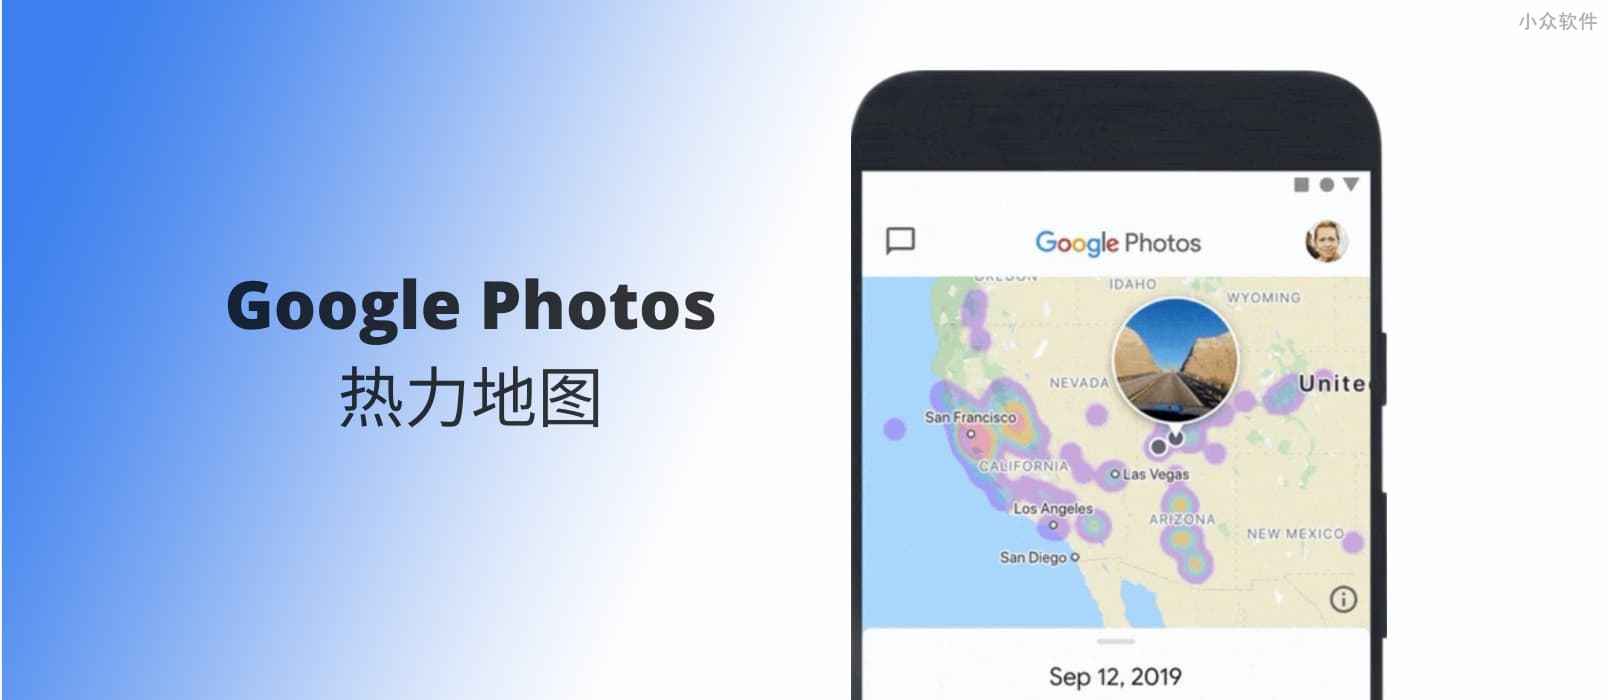 Google Photos 新增照片热力地图功能，这可能是最直观的地图显示照片功能 1